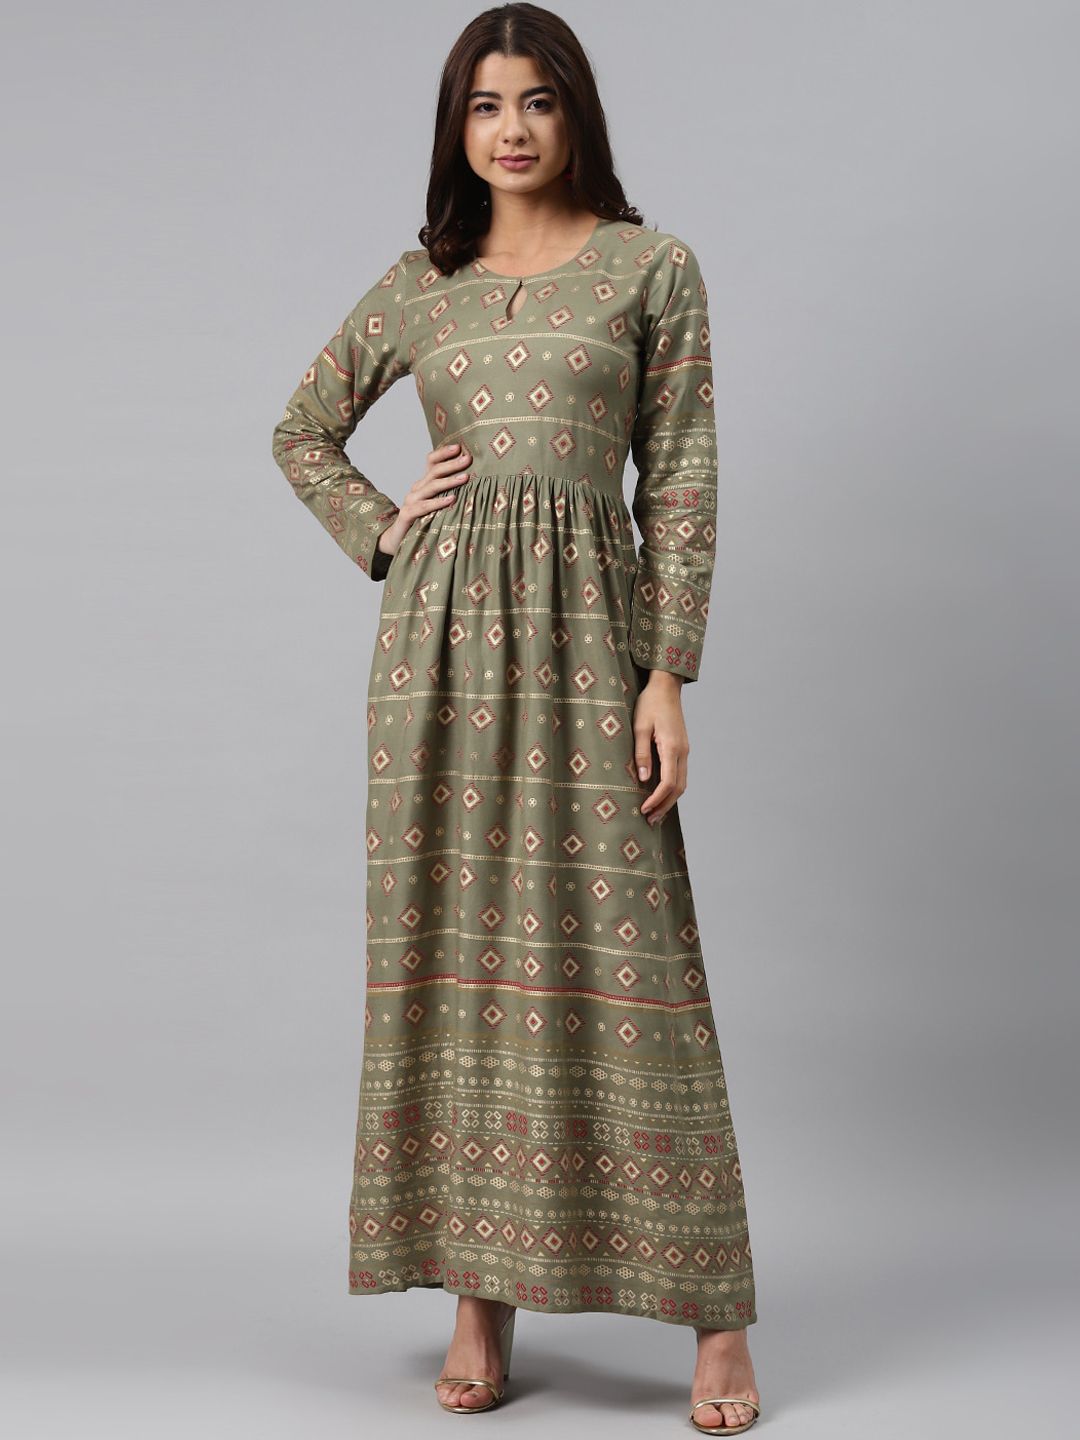 GERUA Green Maxi Dress Price in India